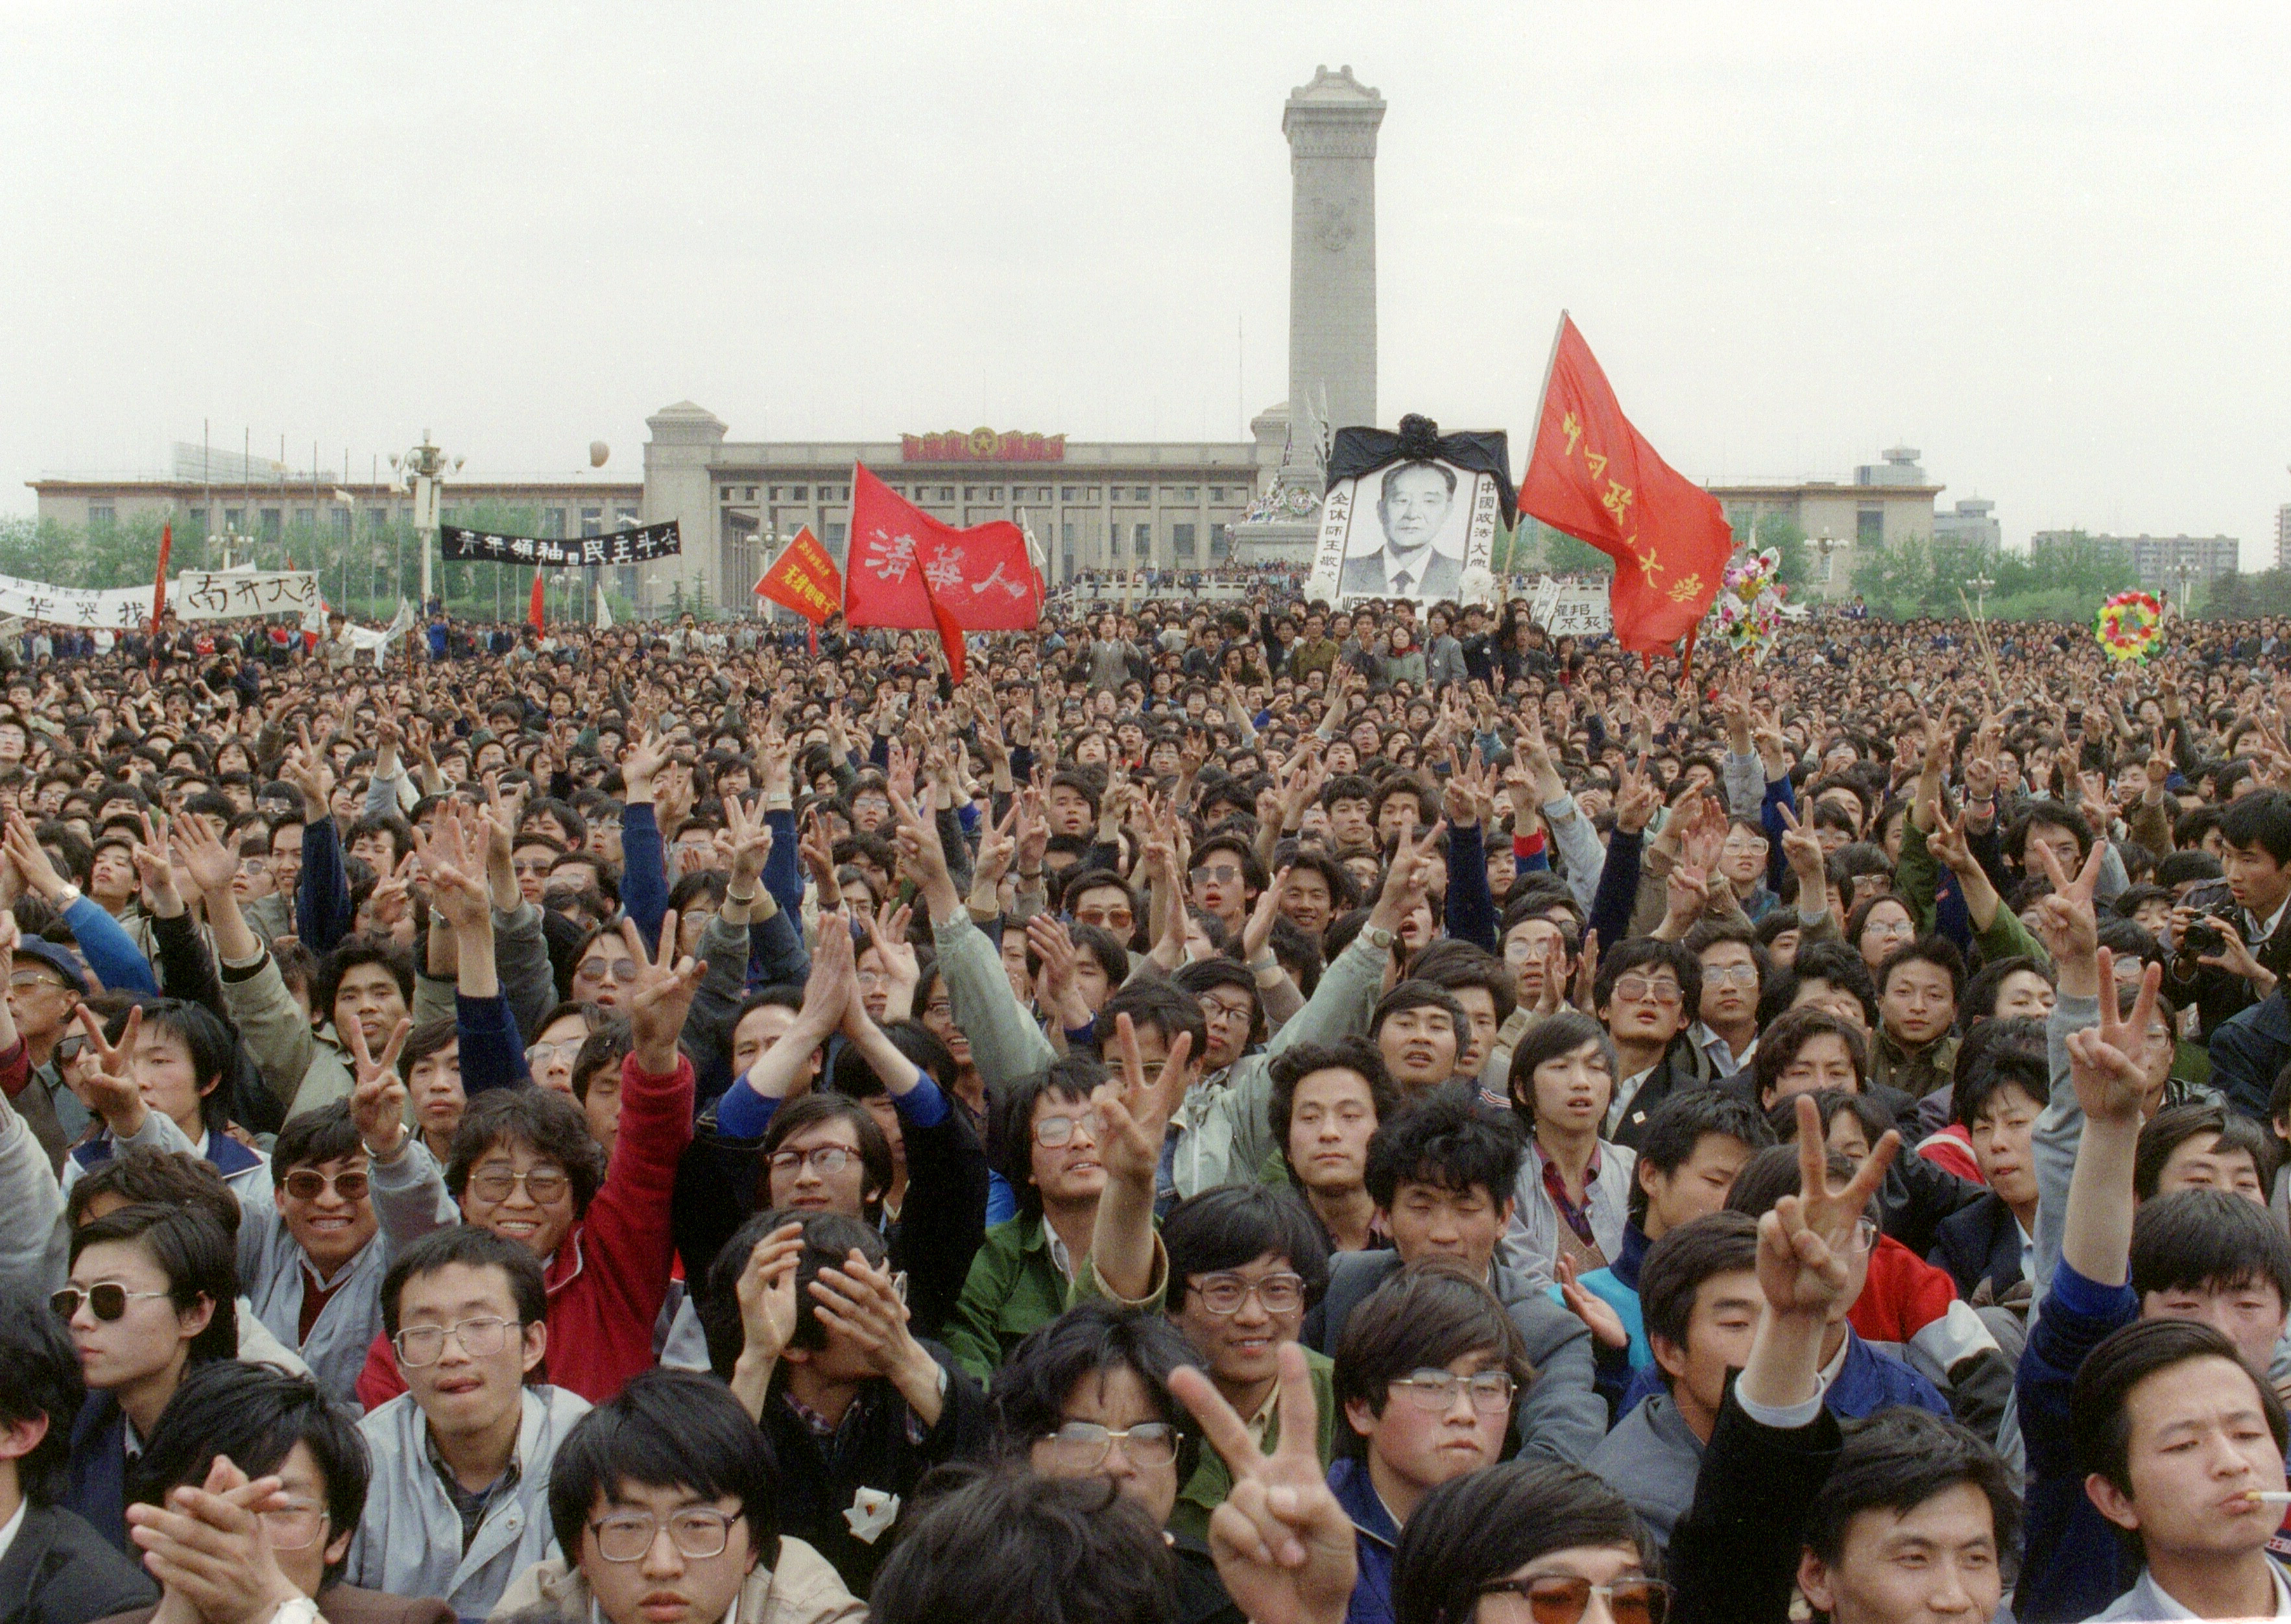 Pour les Chinois, le massacre de la place Tiananmen est toujours trop tabou pour en parler